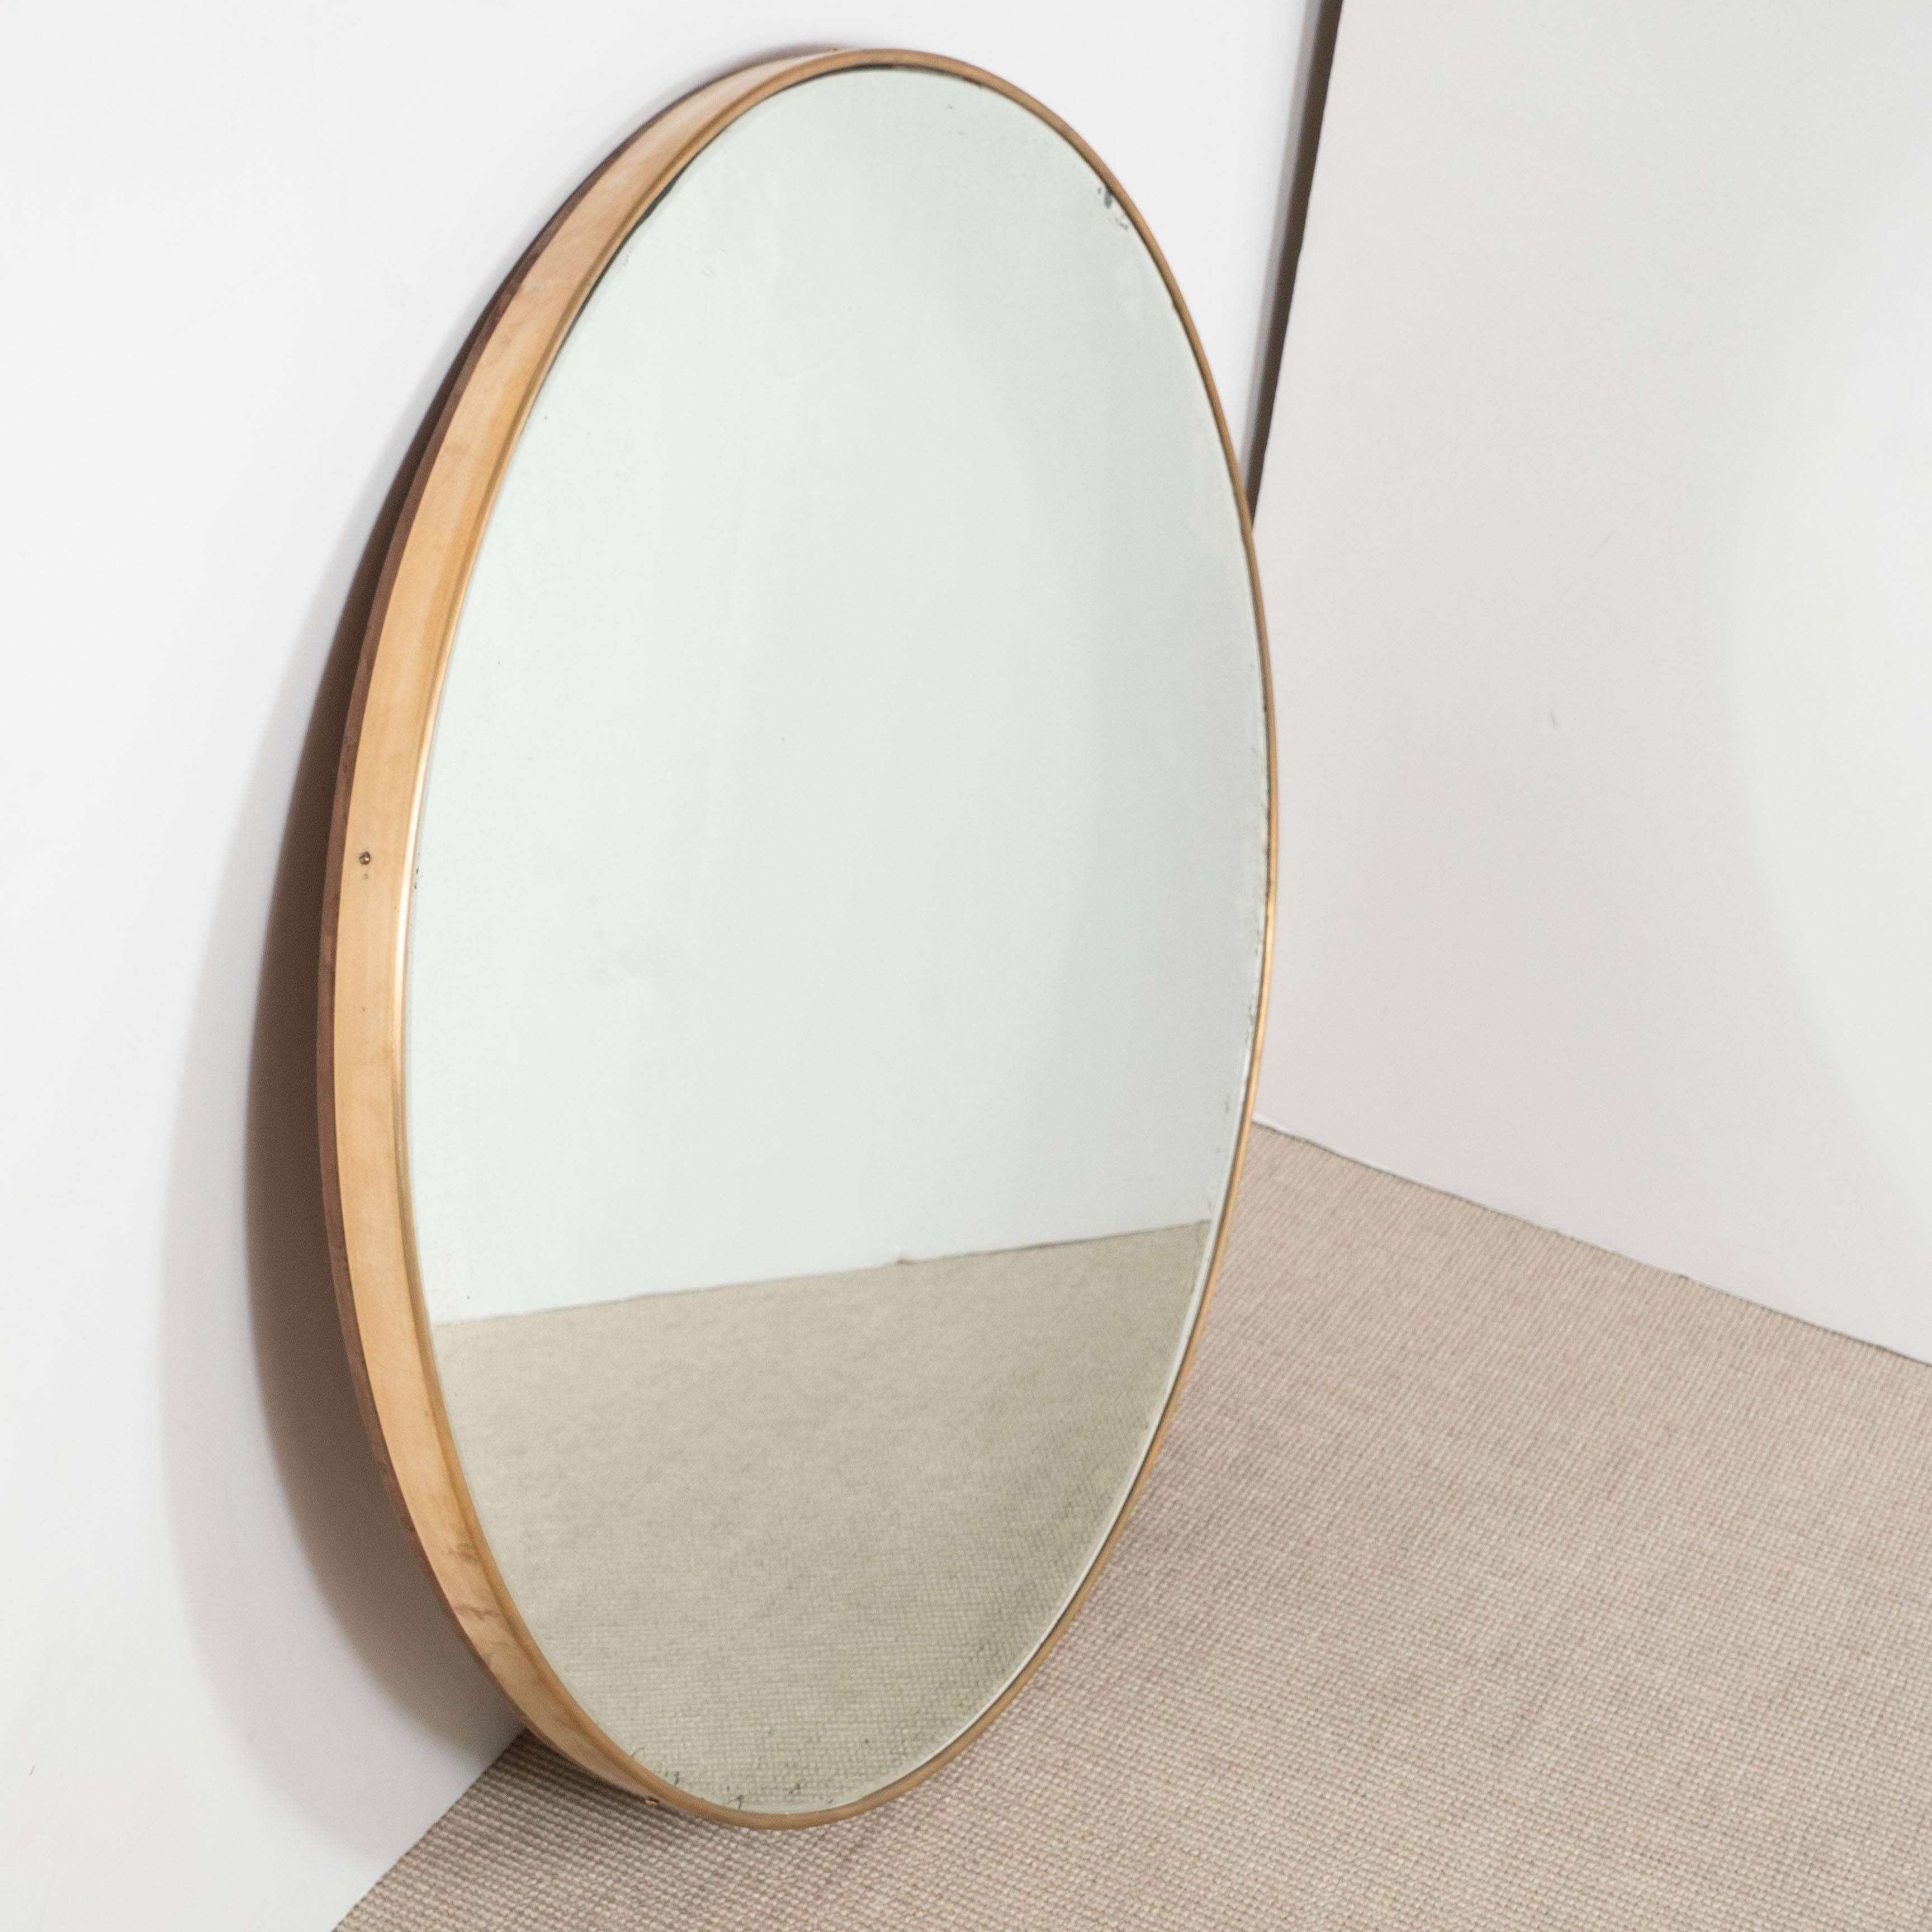 Italian modernist brass framed round mirror, circa 1950s.